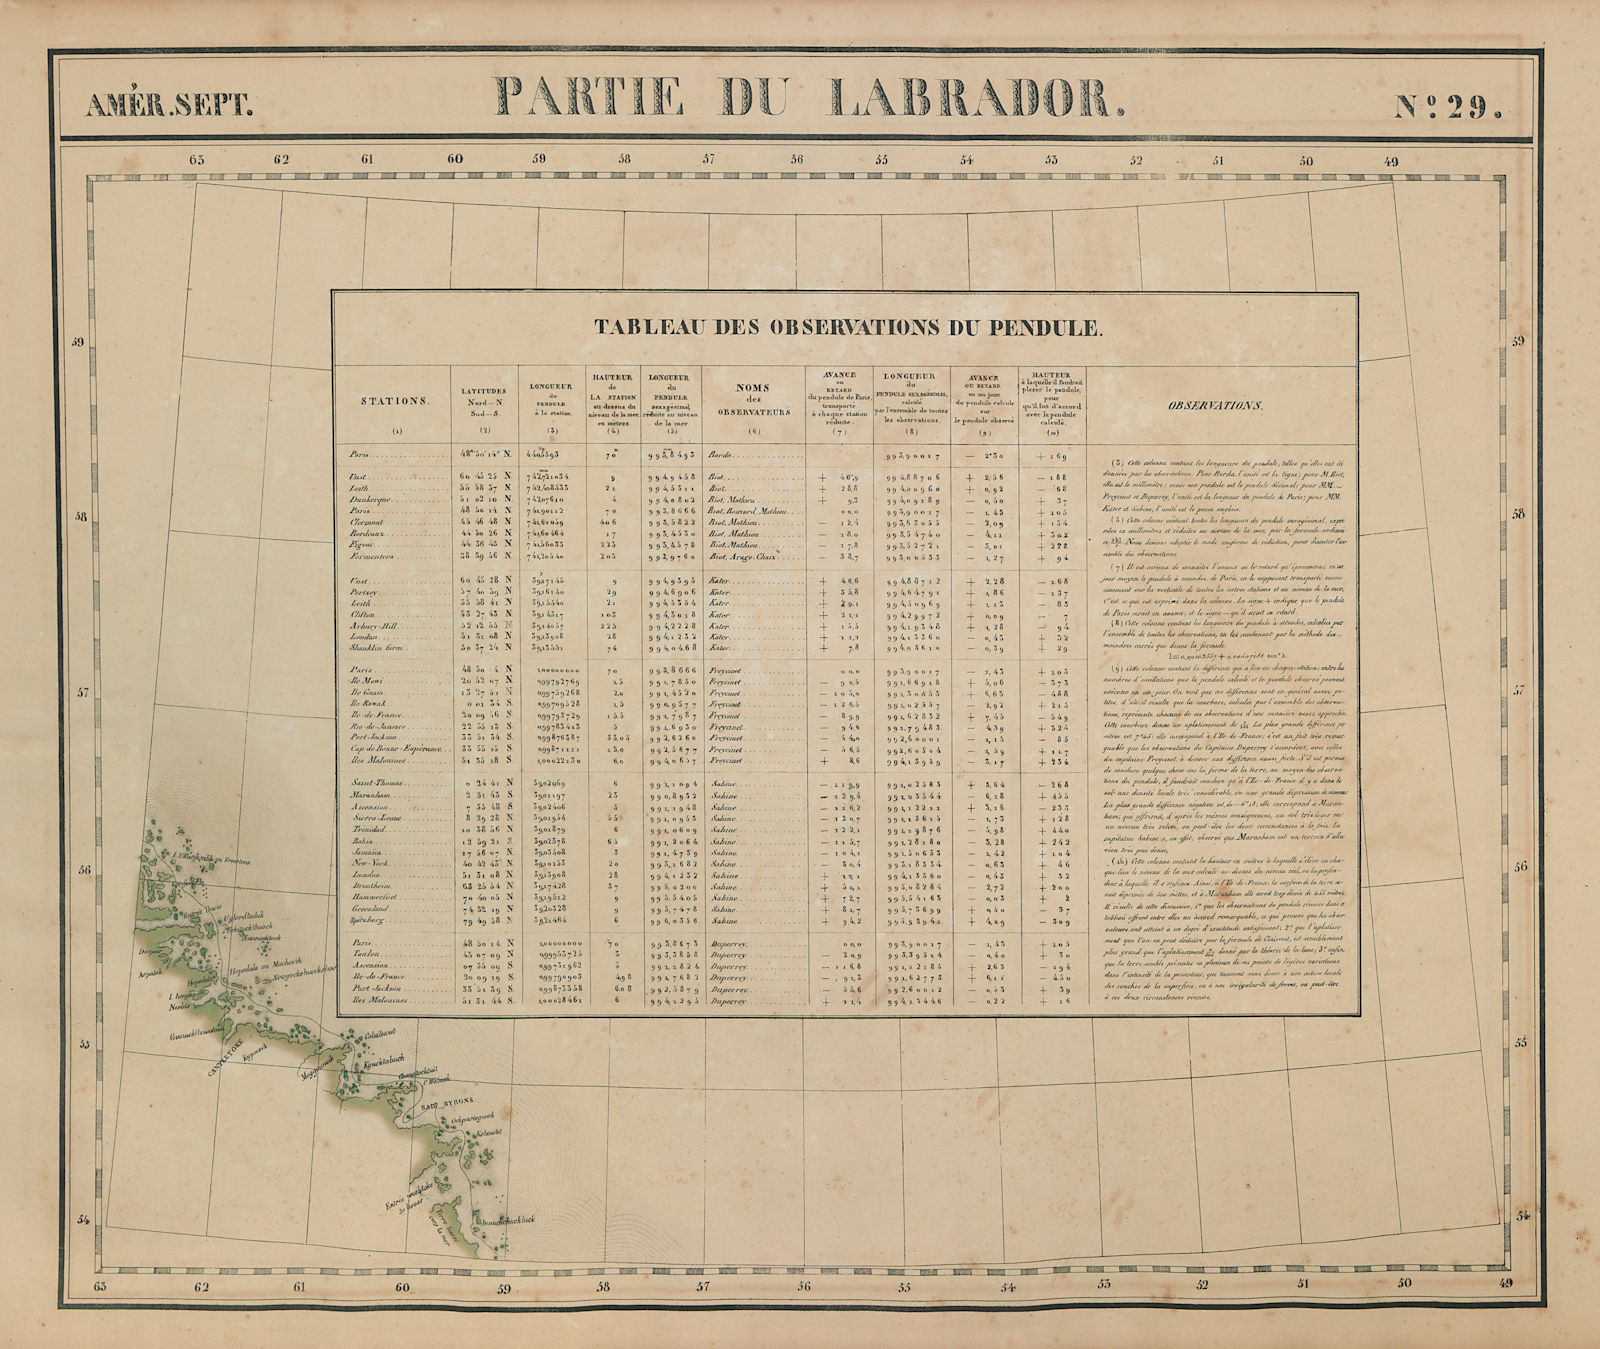 Amér. Sep. Partie du Labrador #29 Nunatsiavut coast Canada VANDERMAELEN 1827 map